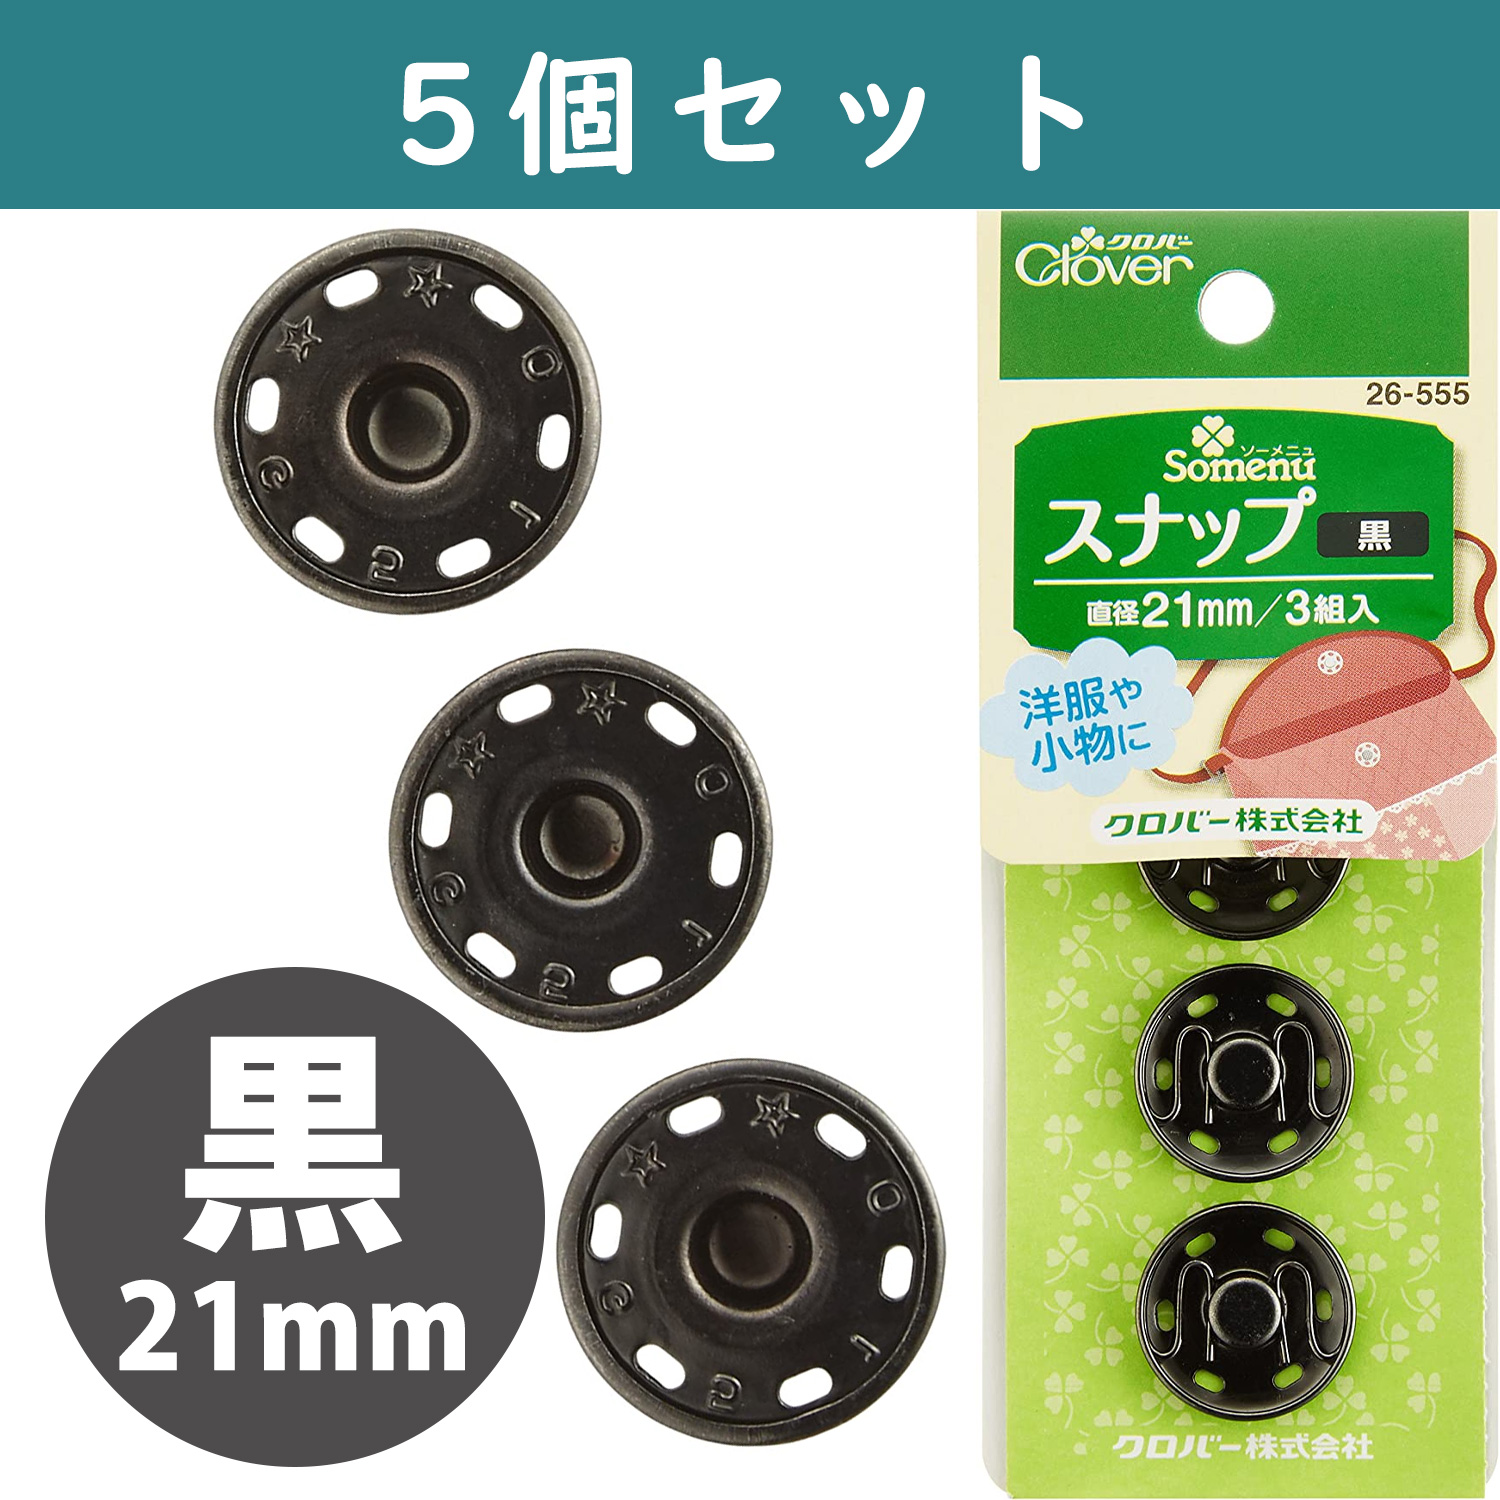 ■【5個】CL26-555-5set スナップ 21mm 3組入り 黒 ×5個　(セット)